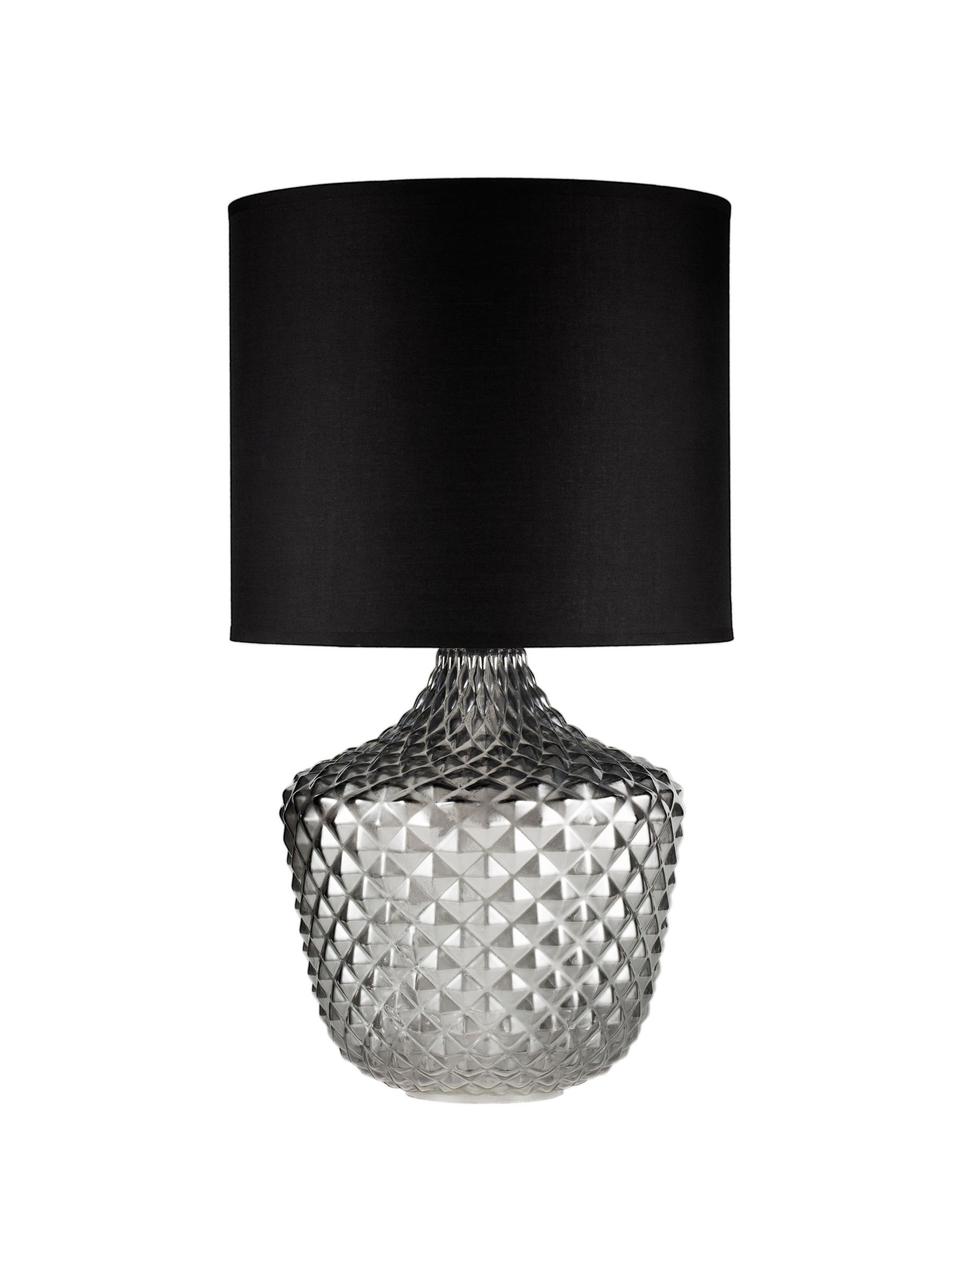 Große Tischlampe Brilliant Jewel aus Glas, Lampenschirm: Stoff, Lampenfuß: Glas, Grau, Schwarz, Ø 32 x H 56 cm